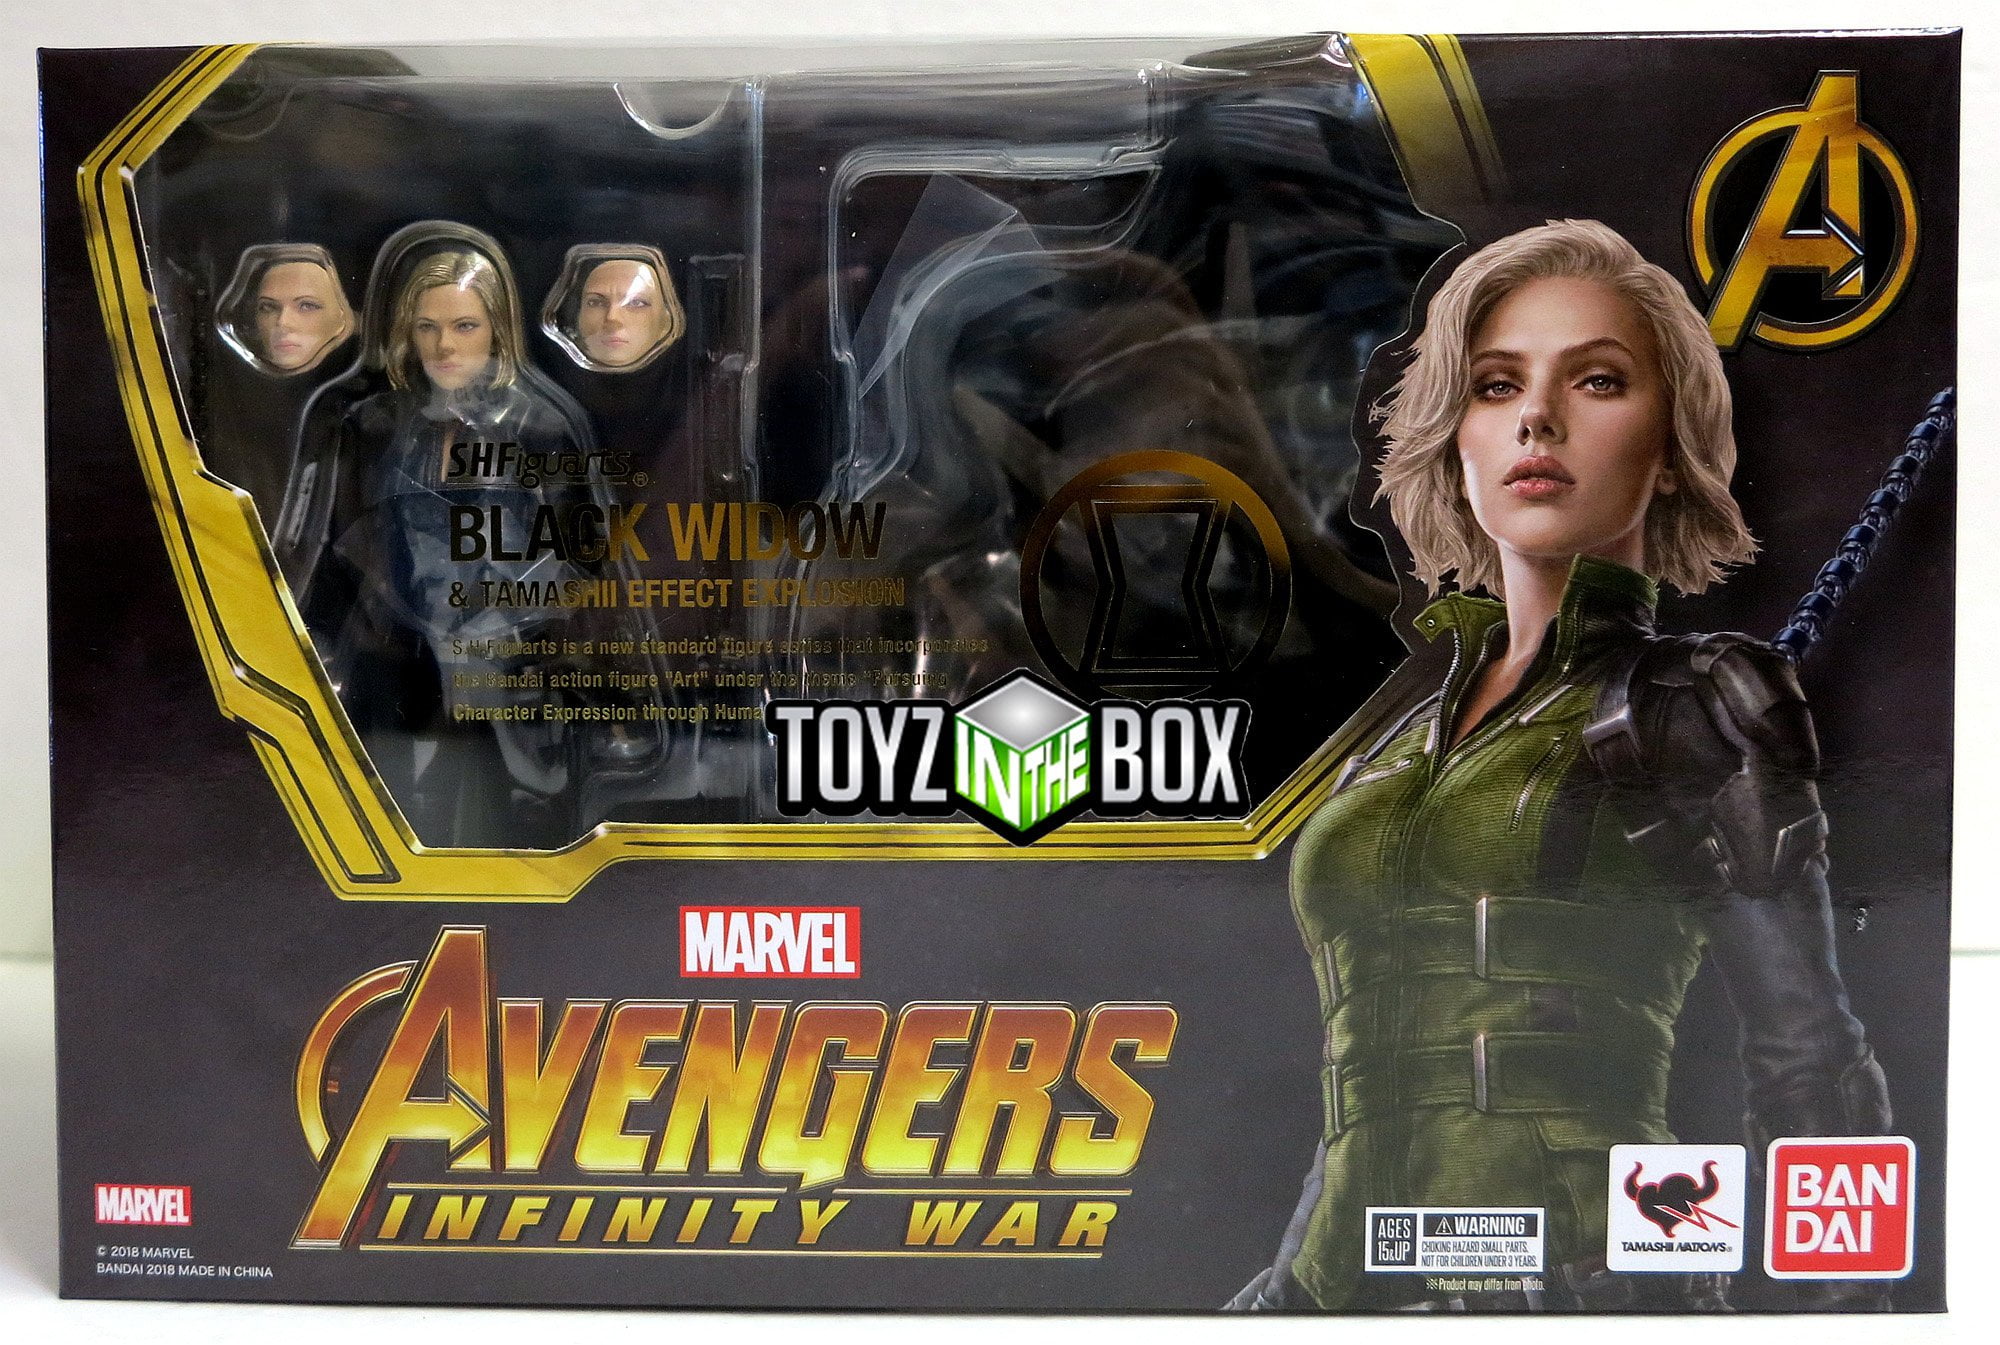 Figuarts Avengers Infinity War Black Widow Marvel Action Figure 